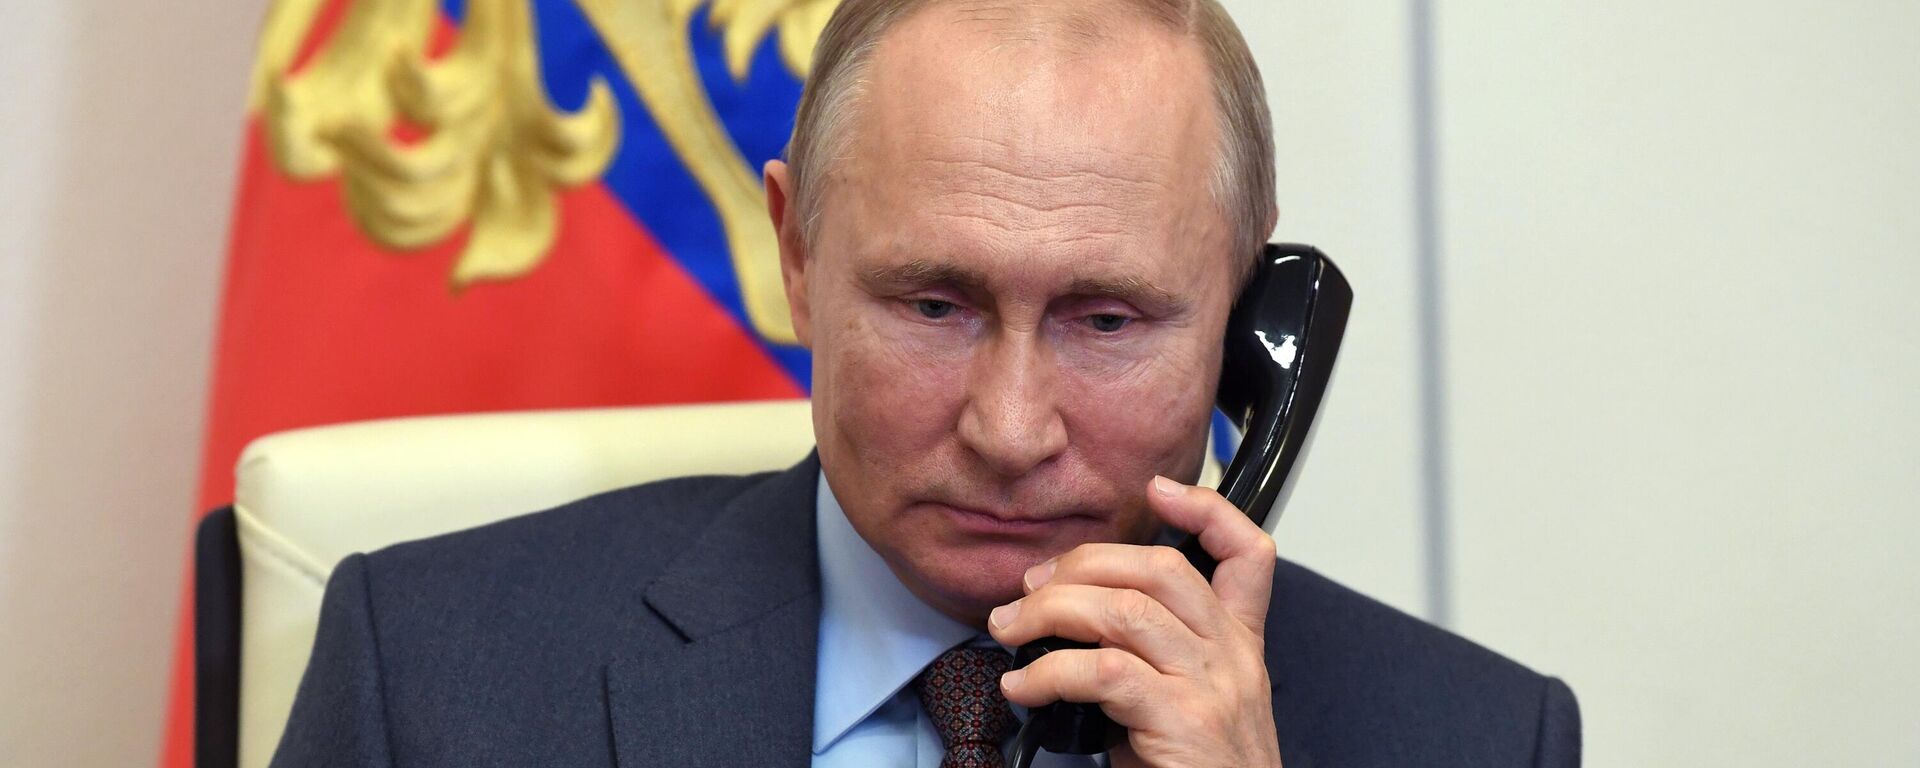 Президент РФ Владимир Путин во время телефонной беседы - Sputnik Латвия, 1920, 07.06.2021